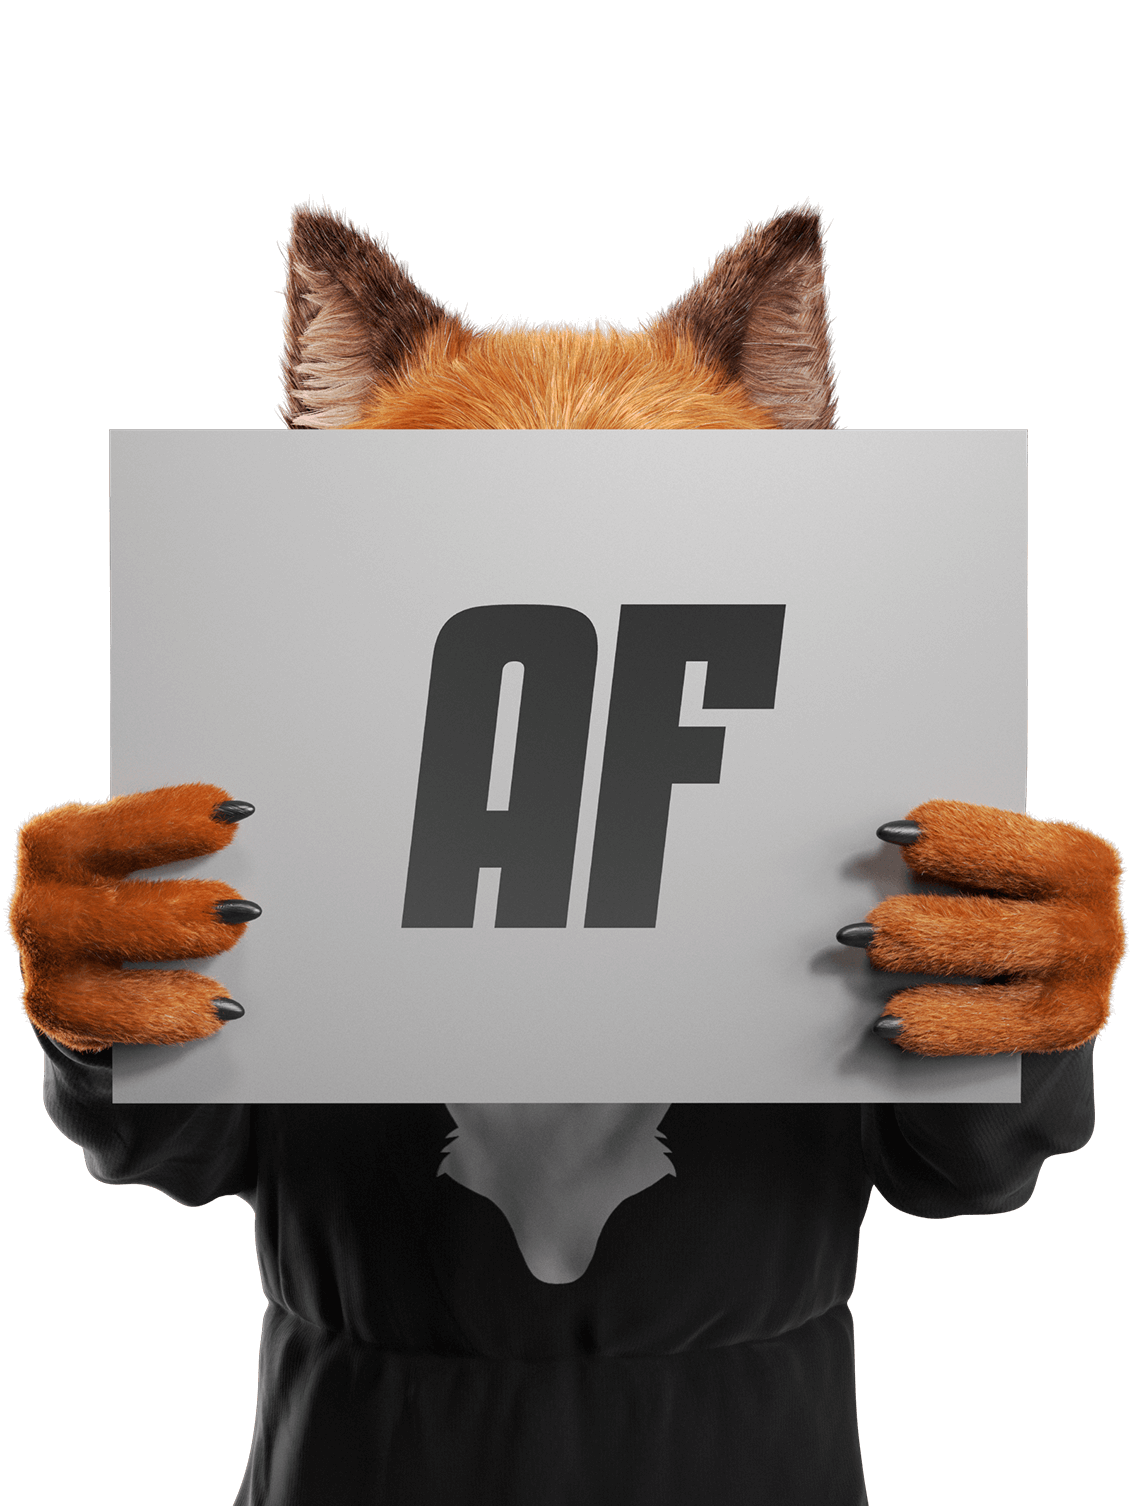 Anonymous Fox